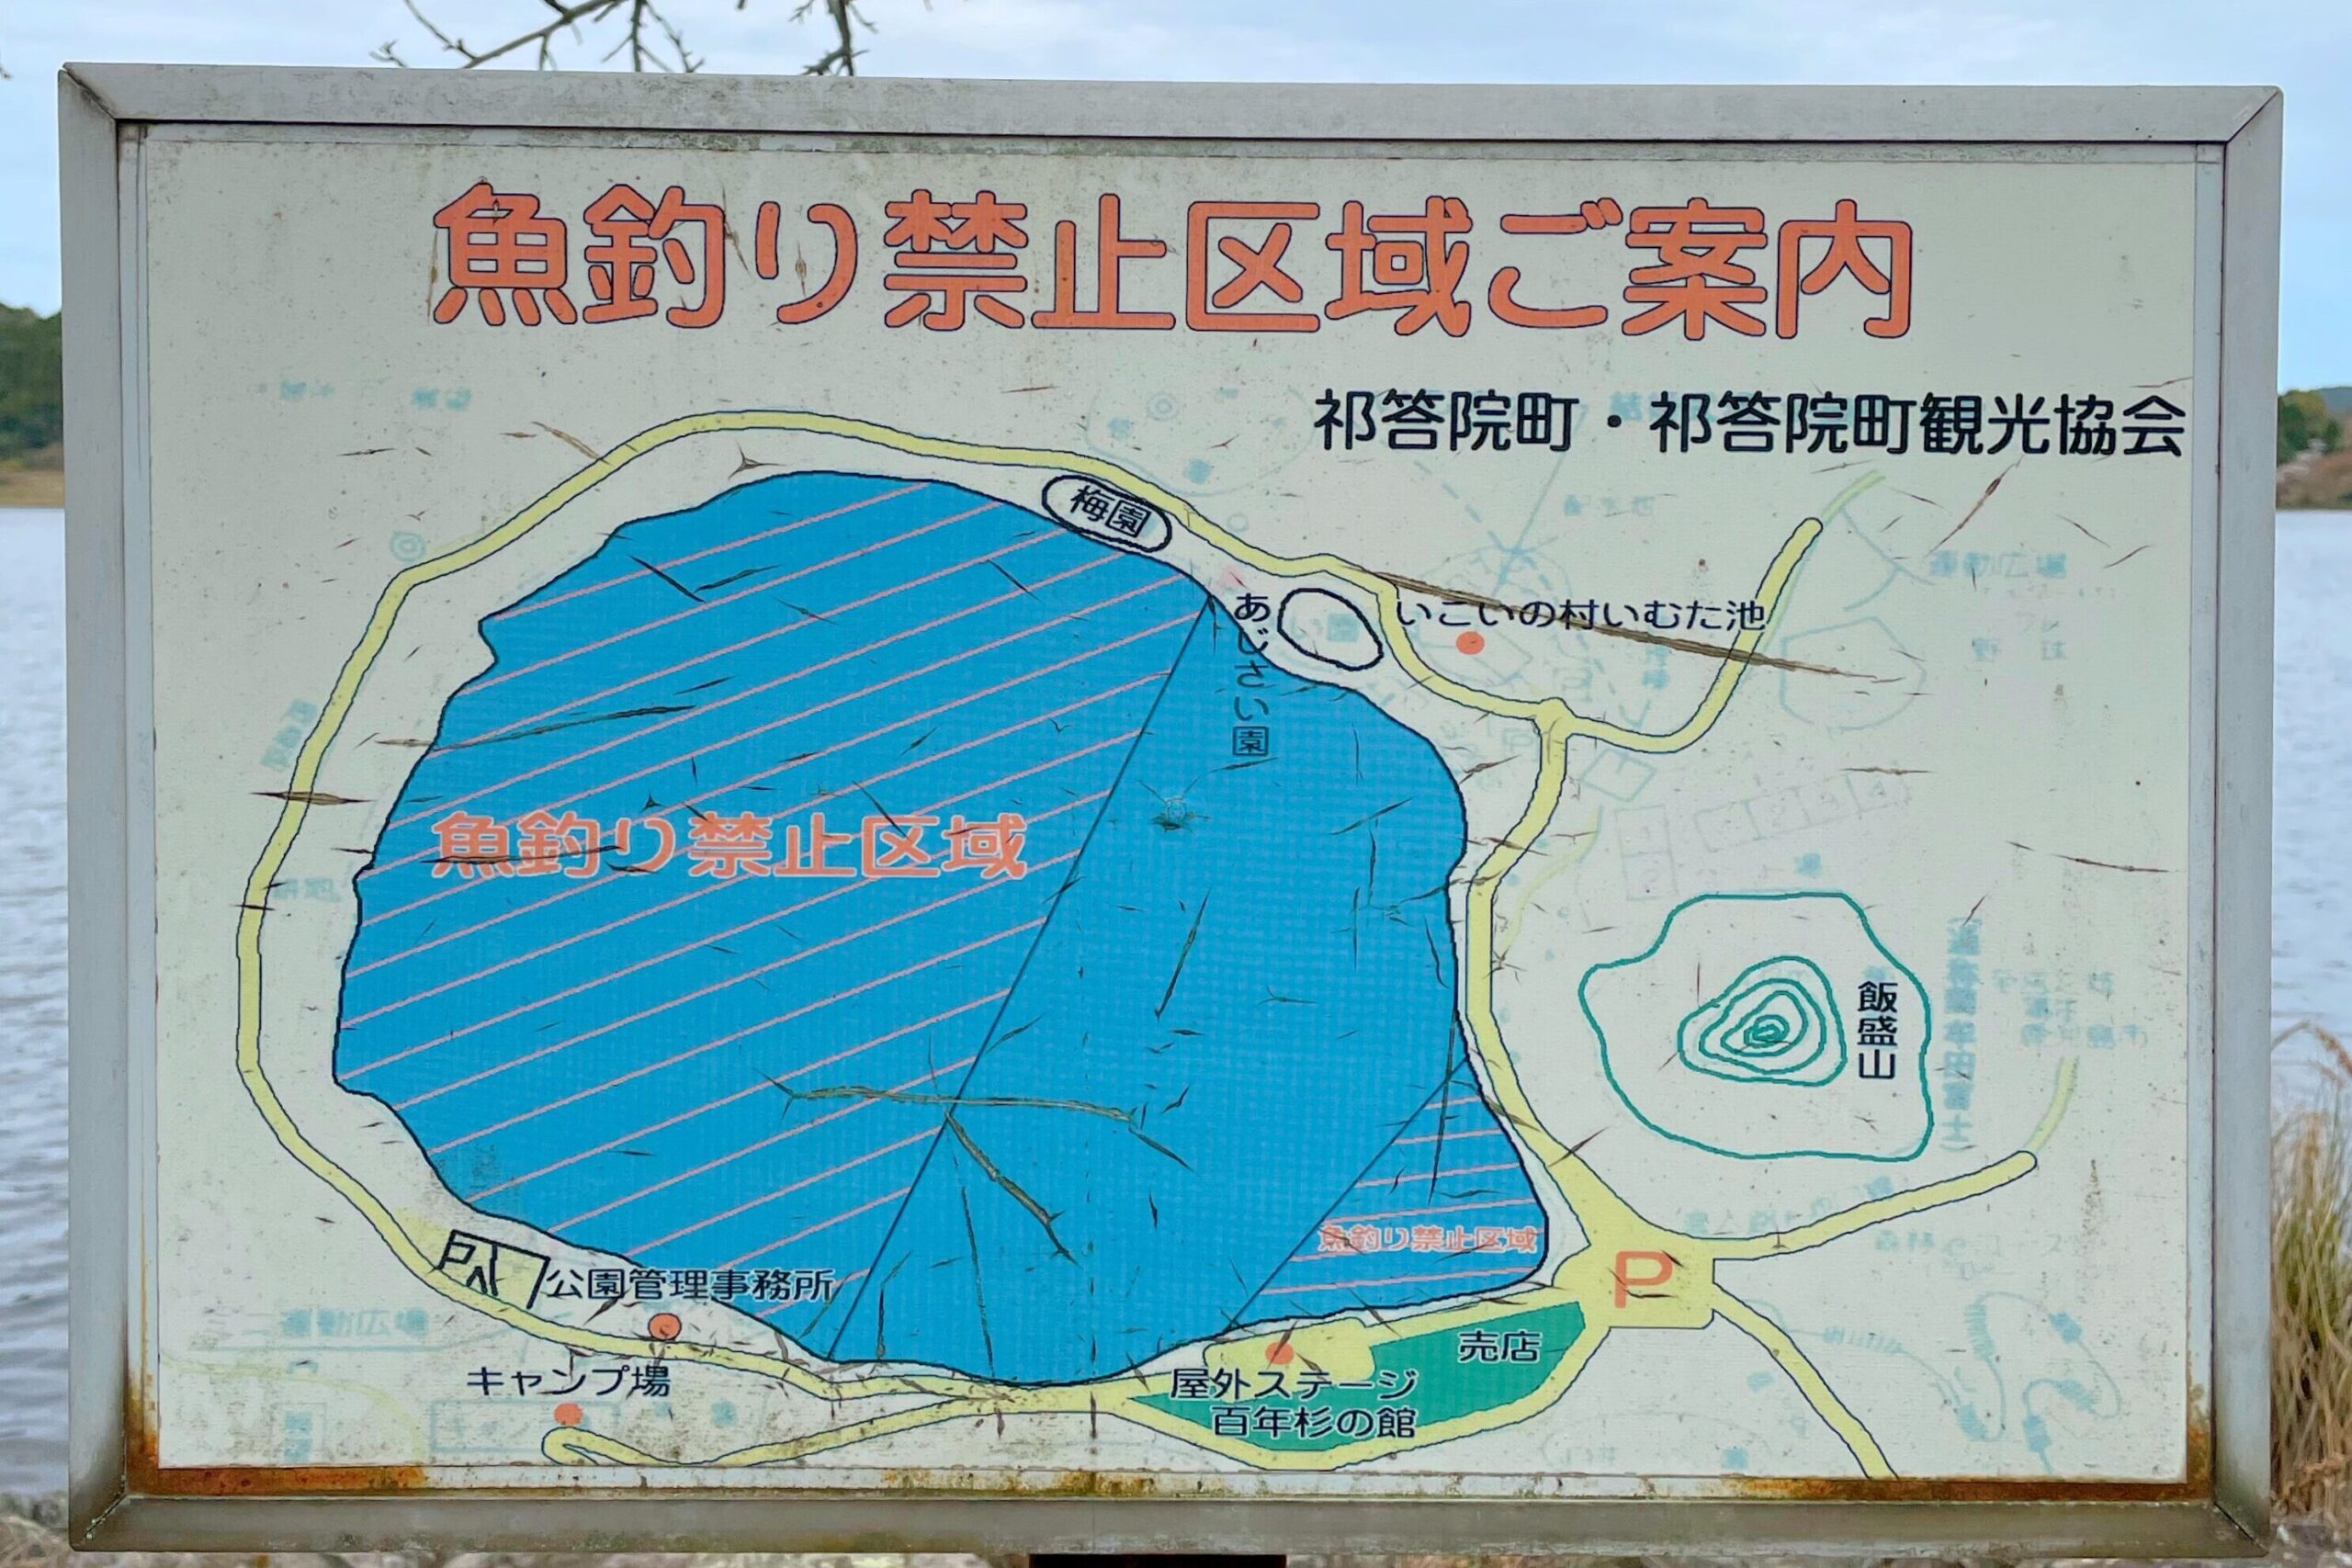 藺牟田池県立自然公園魚釣り禁止区域ご案内の掲示板